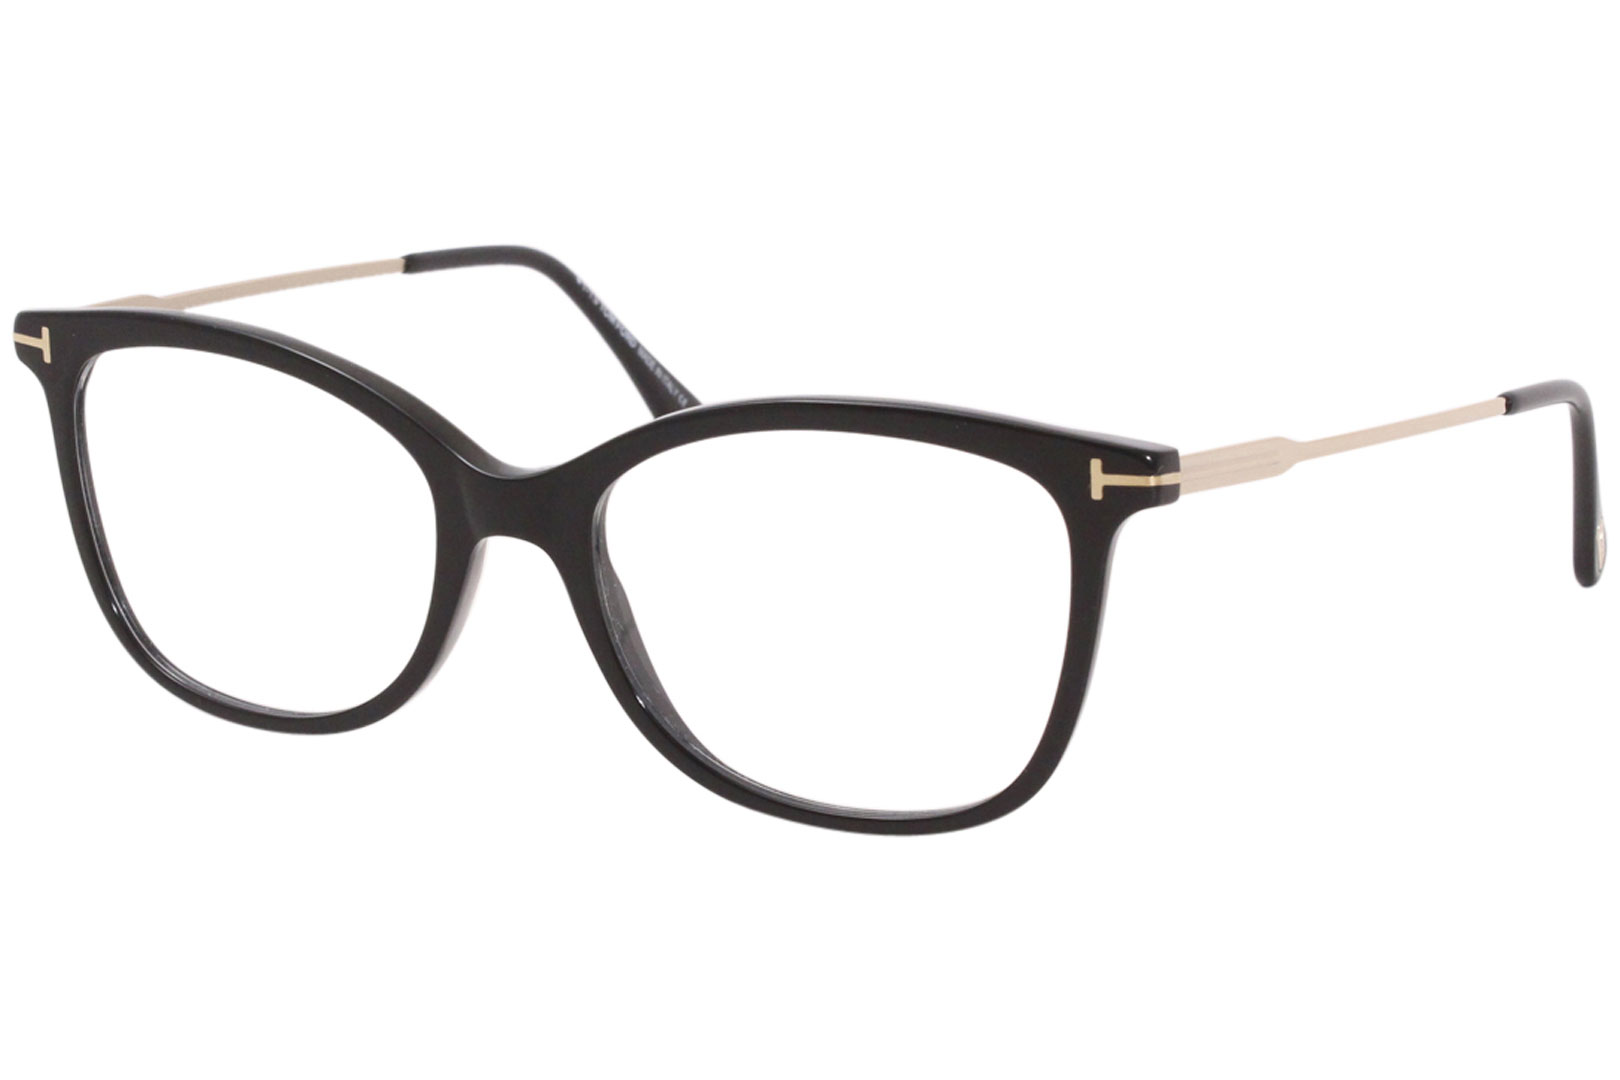 Tom Ford TF5510 001 Eyeglasses Women's Black/Rose Gold Full Rim Cat Eye ...